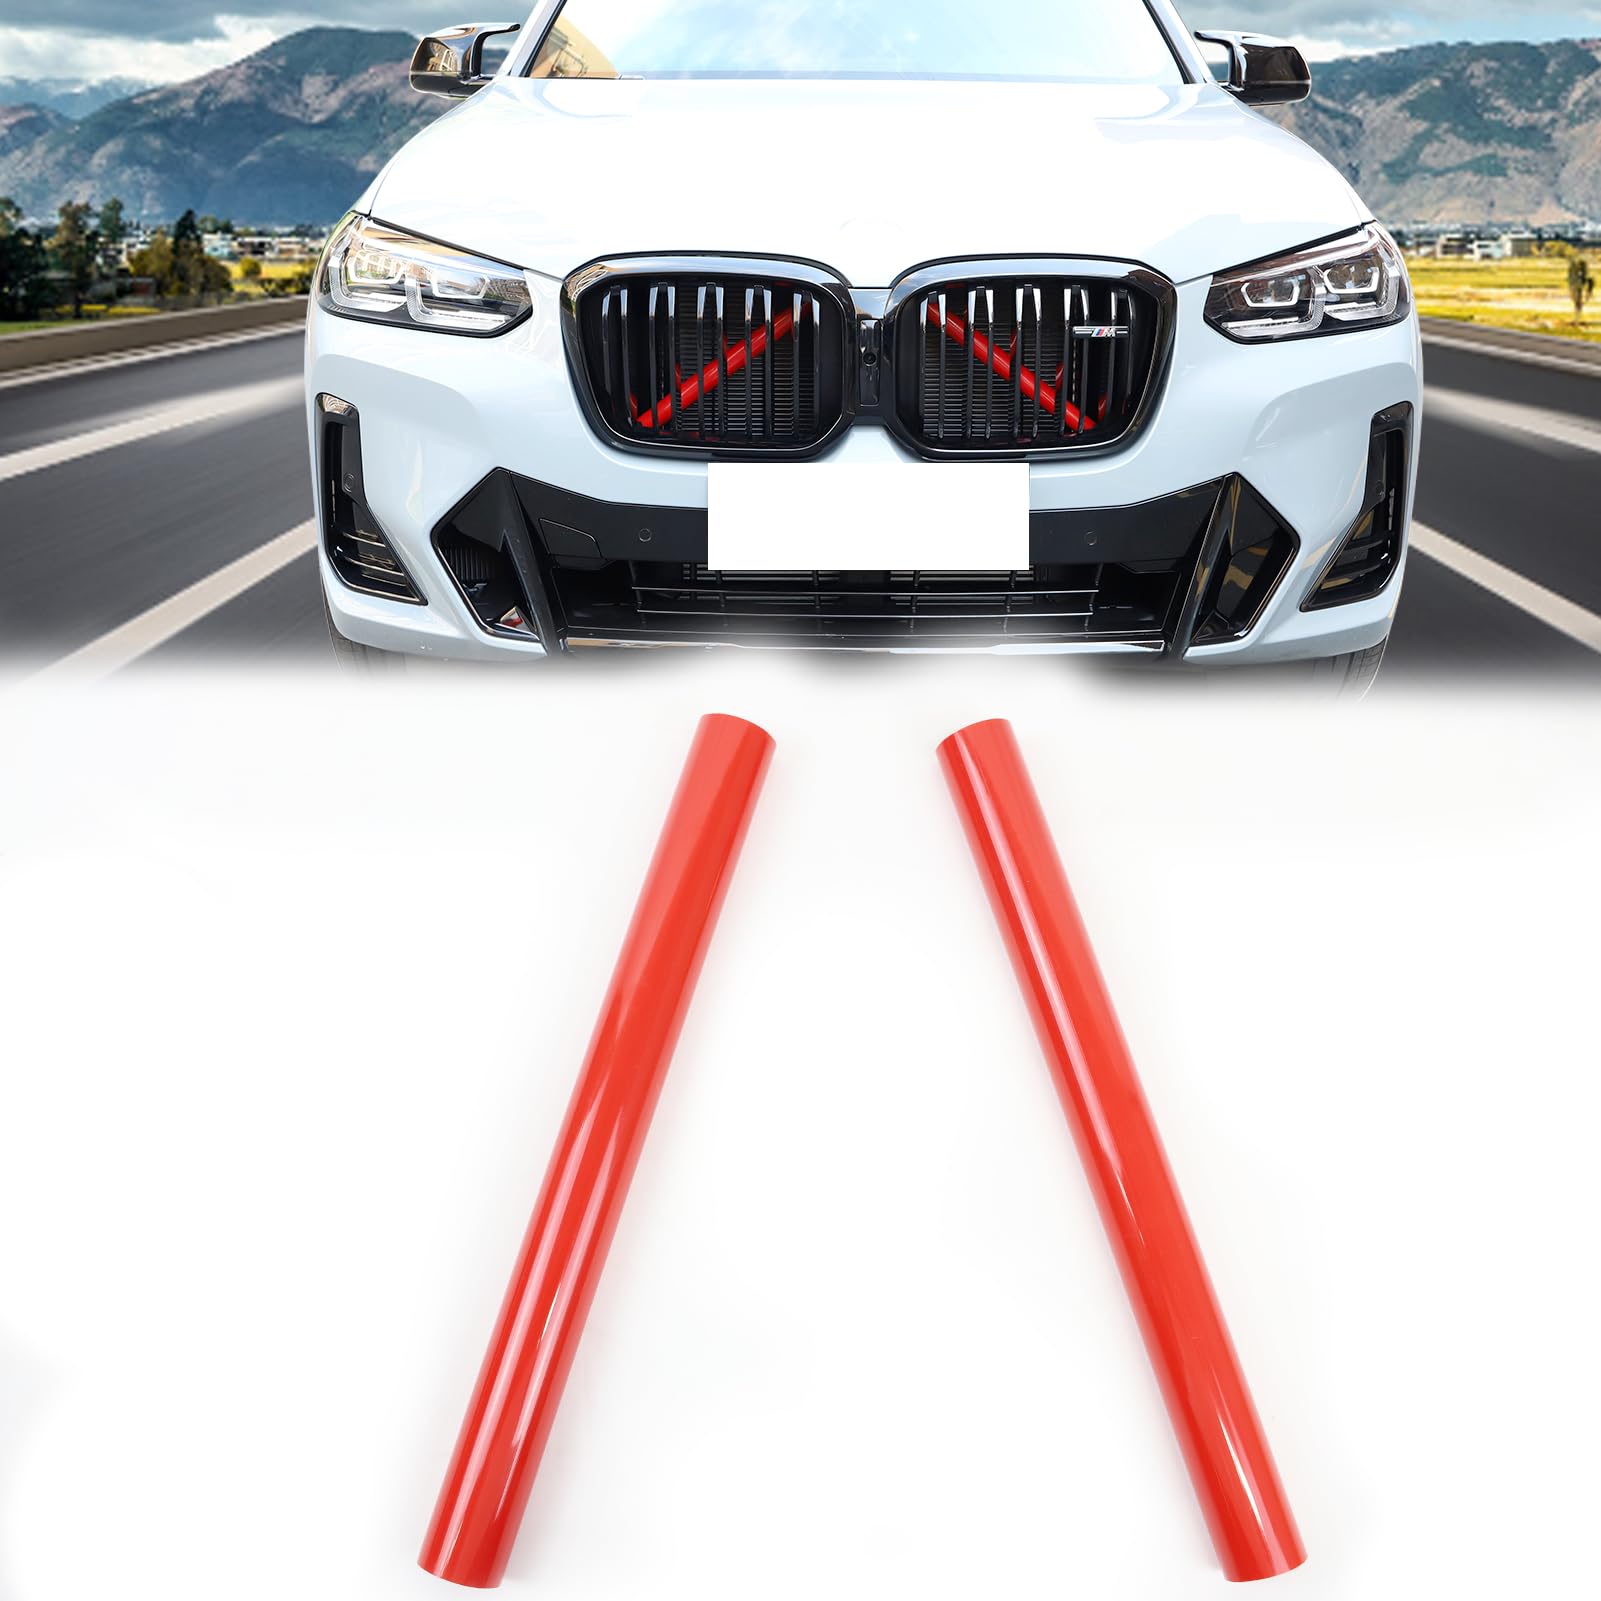 X3 G01 Kühlergrill Einsatz Streifen Zierleiste,für BMW X3 G01 F25 X4 G02 F26 X5 G05 F15 E70 X6 G06 F16 E71 X7 G07,V-Brace Wrap Covers Blue Grill Stripes Front Grill Insert Trims Stripes (Rot) von SHSBSCAR